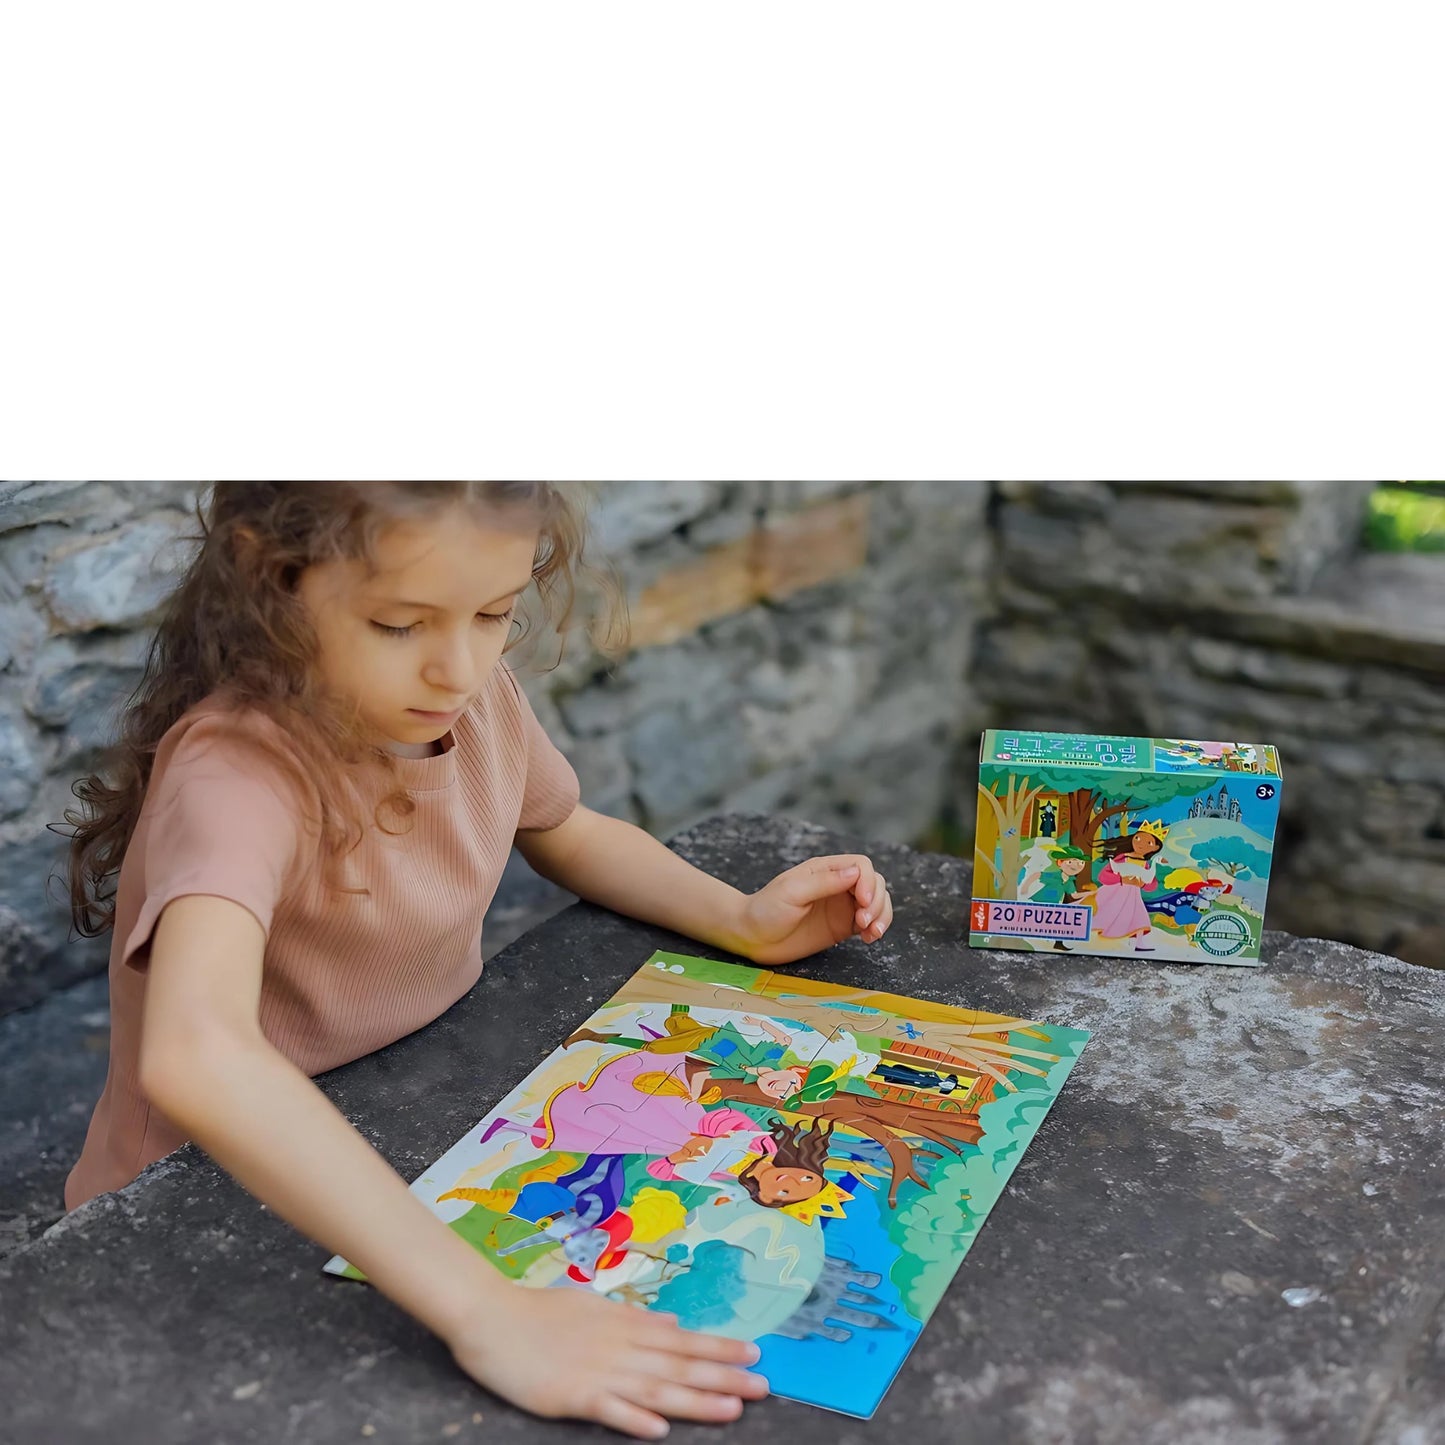 Fairytale Puzzle by eeBoo, 20 Pieces | Preschool Puzzles